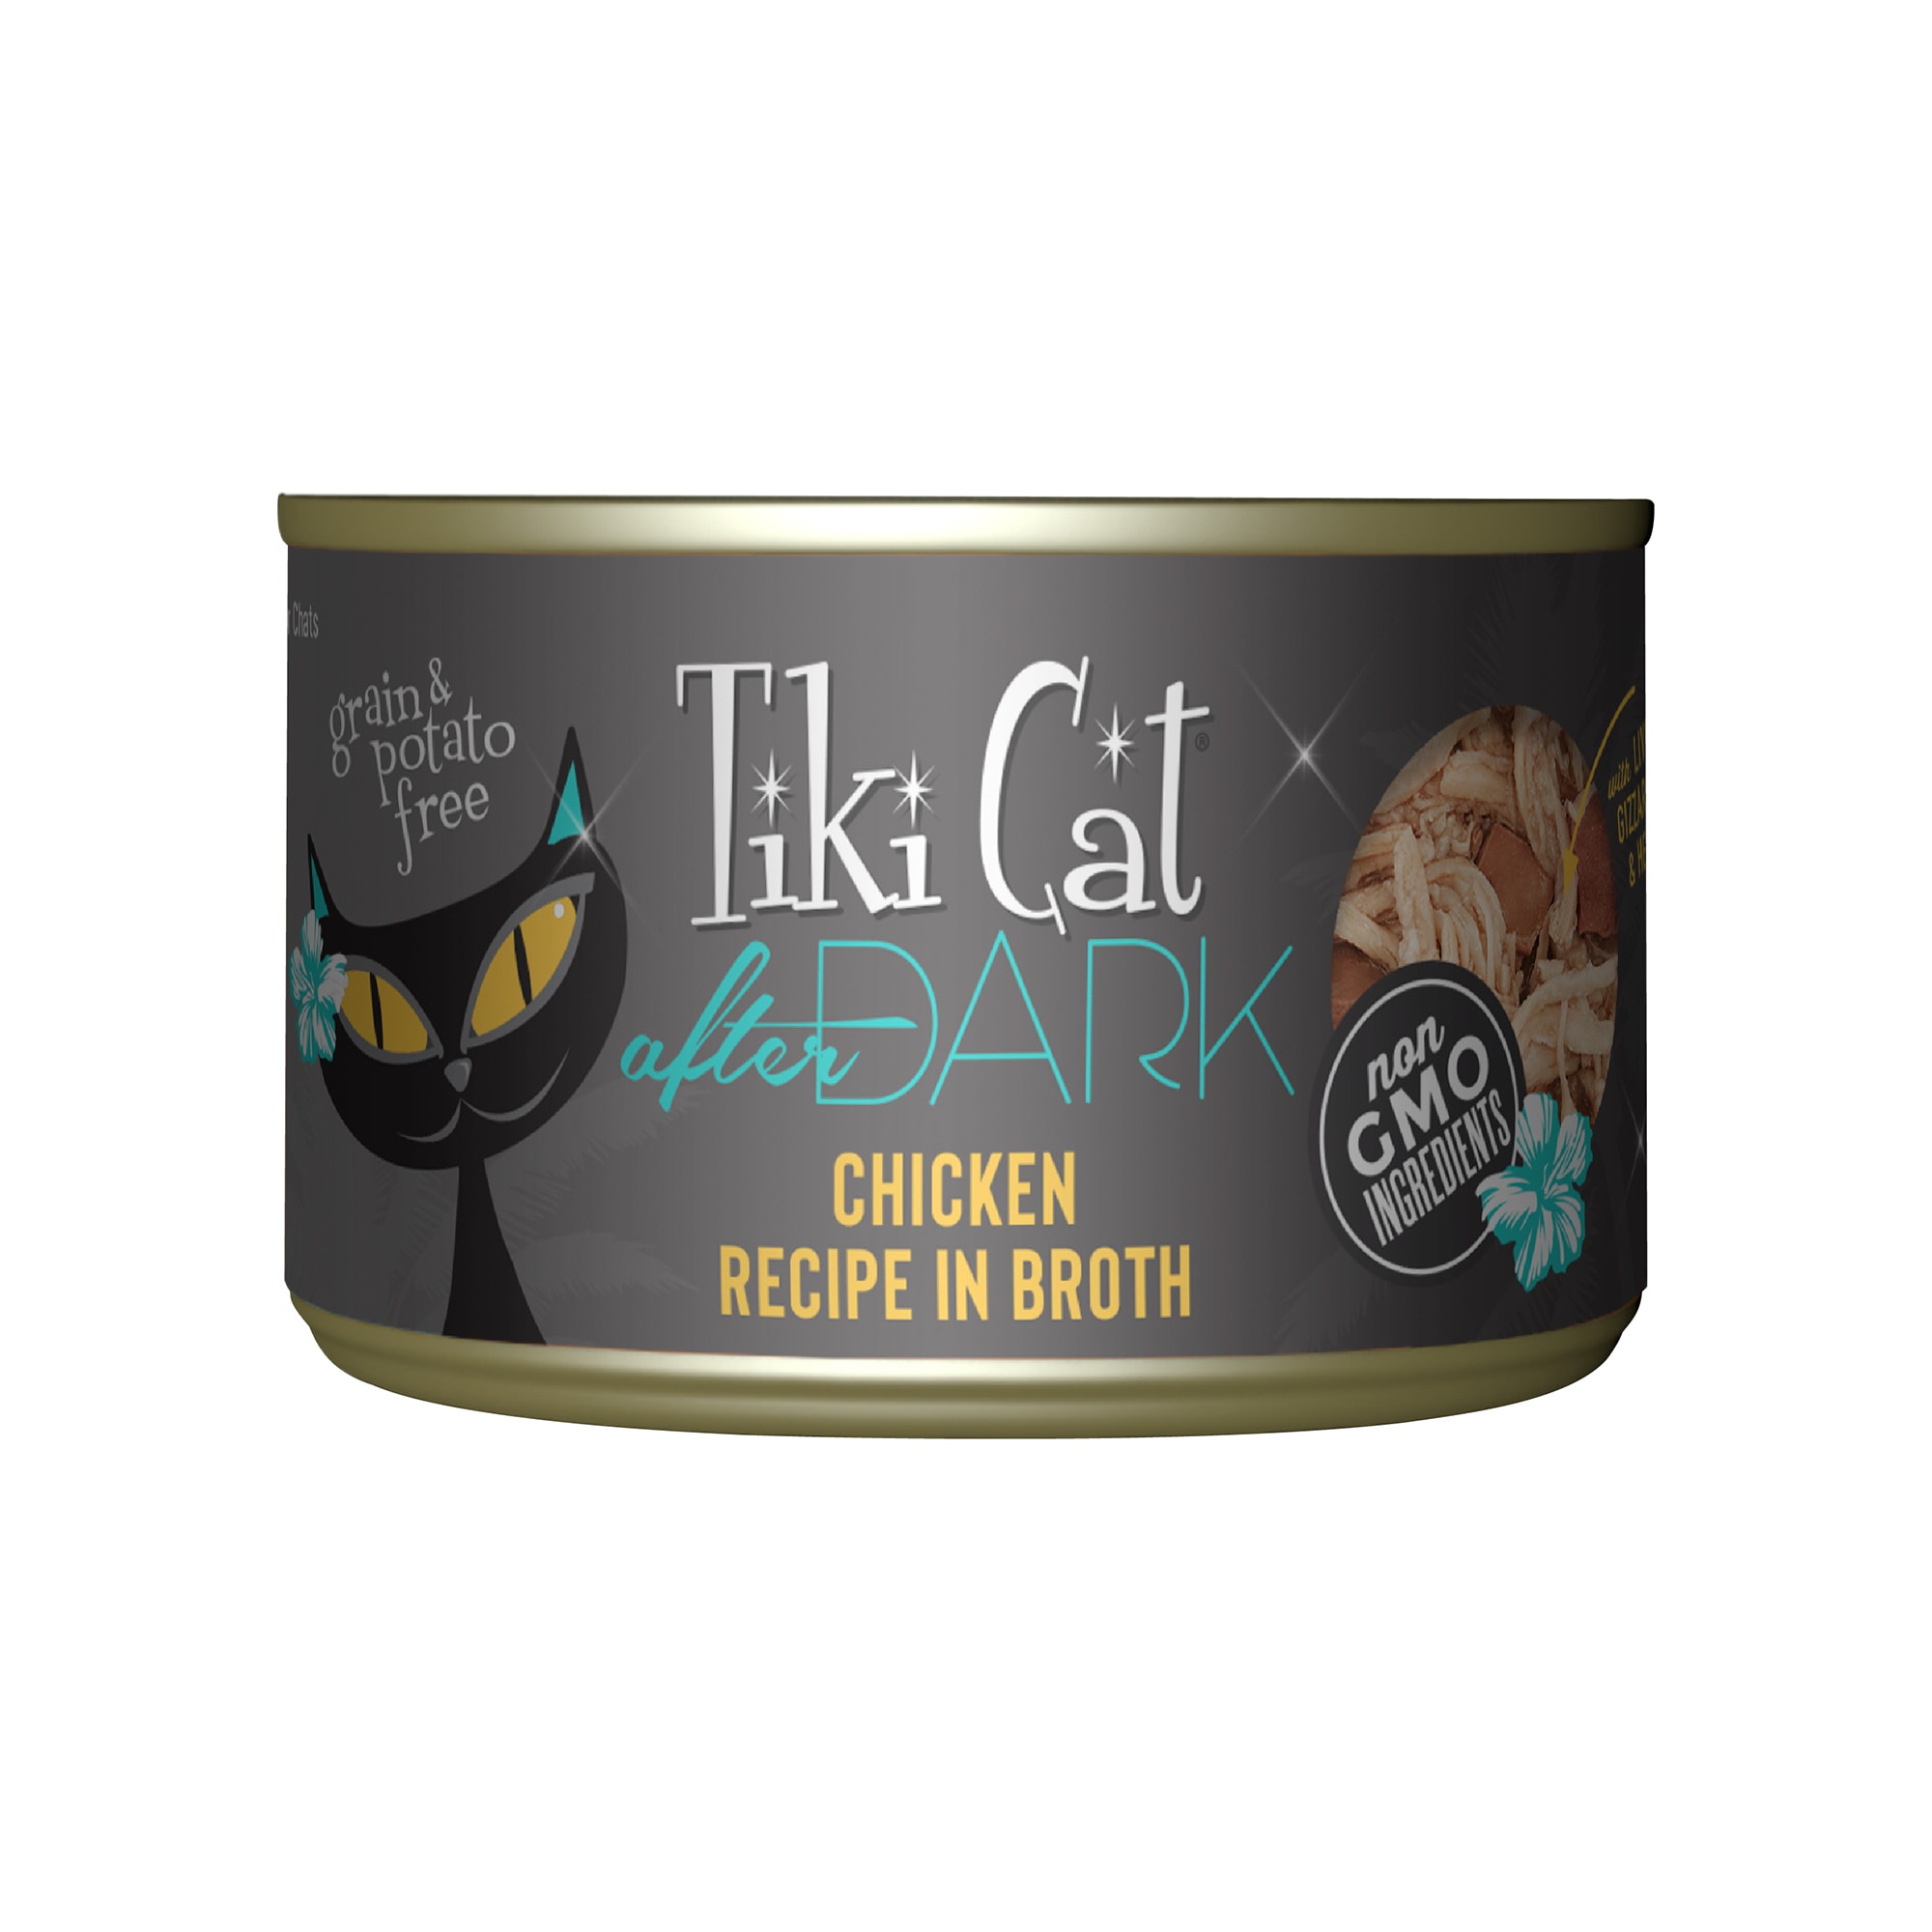 Tiki Cat After Dark Chicken Wet Food, 5.5 oz. Petco